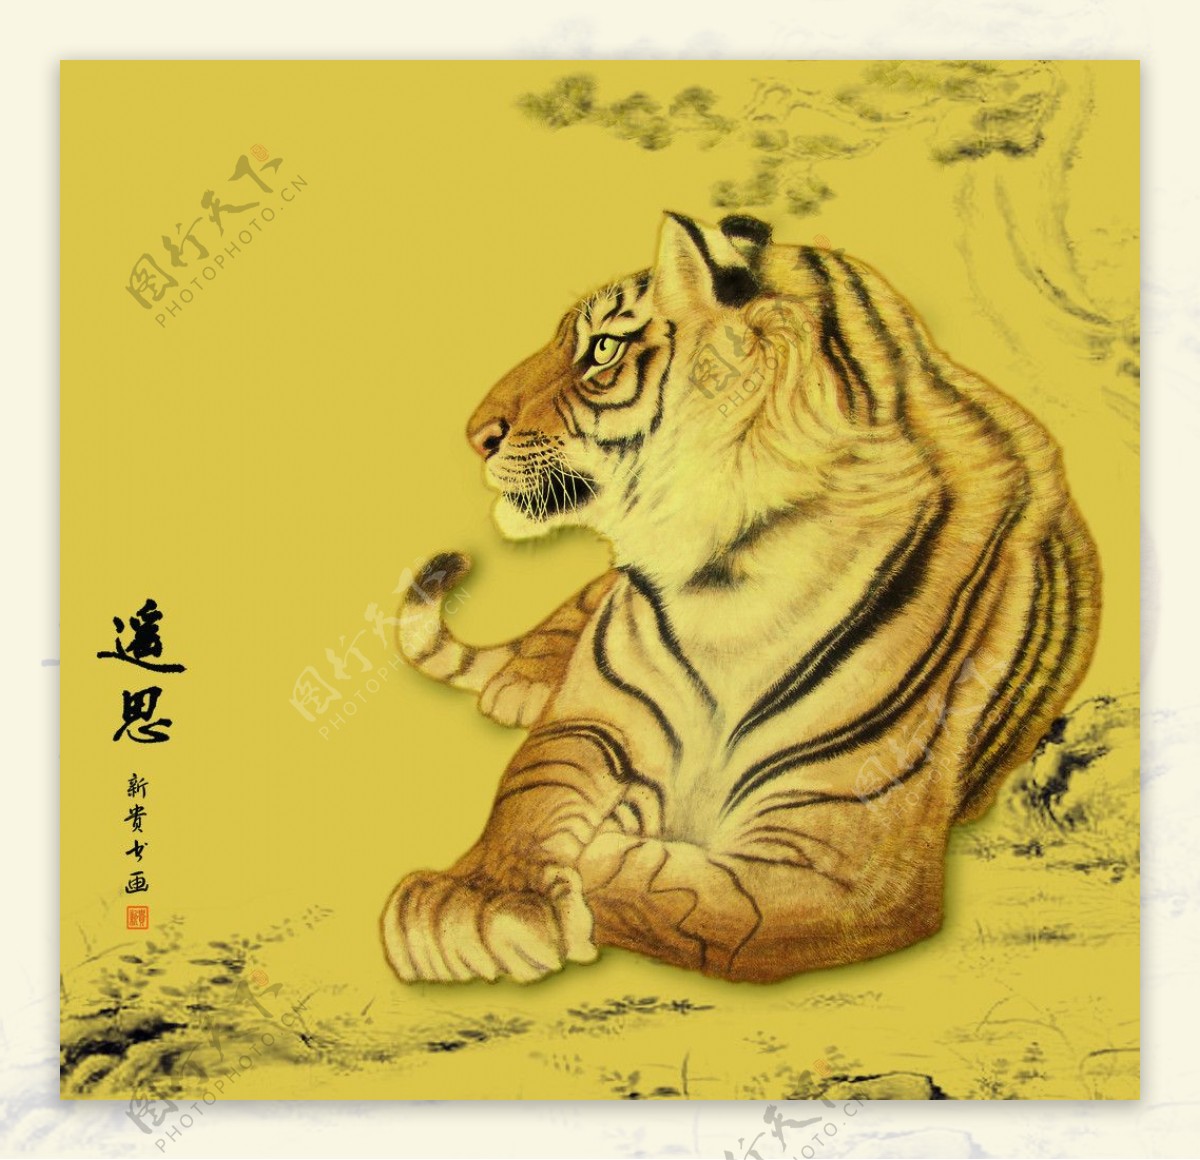 中国画老虎图片